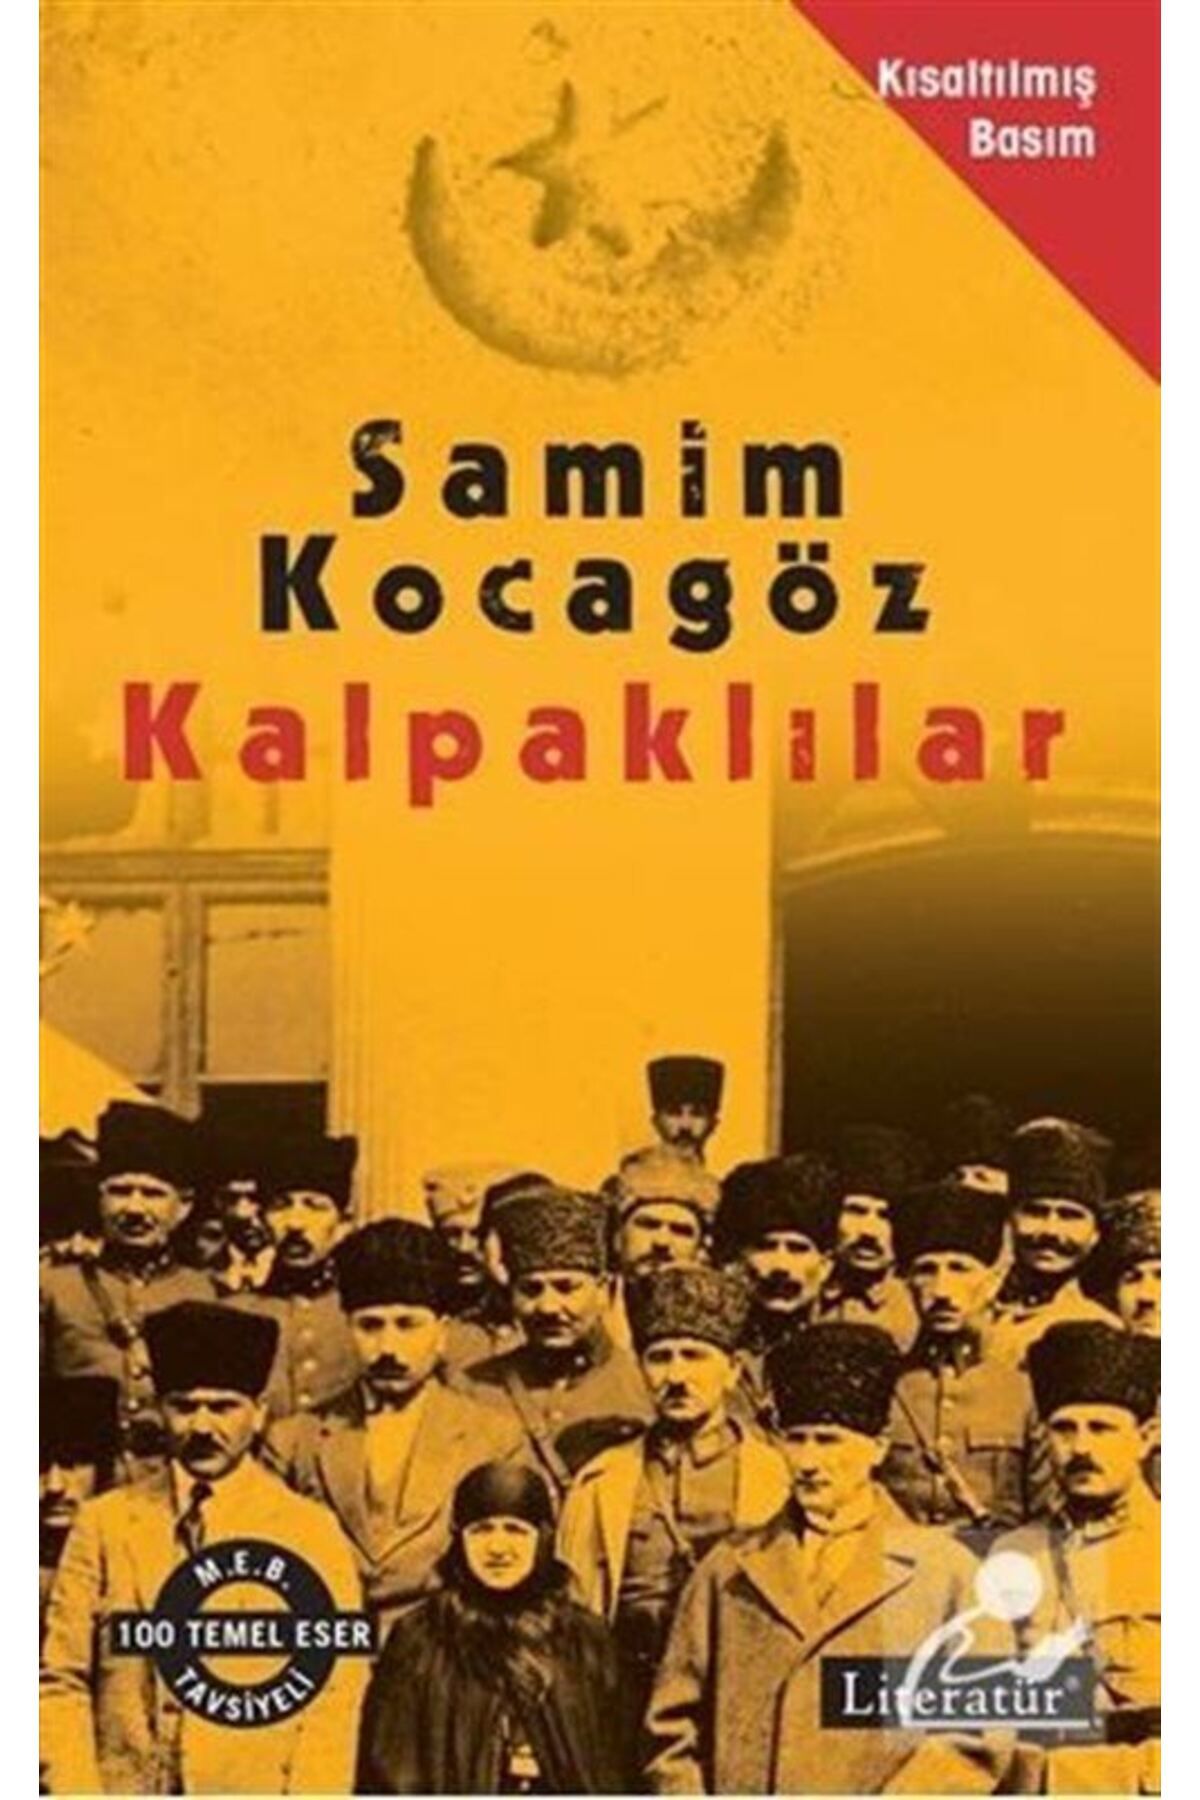 Literatür Yayınları Kalpaklılar (KISALTILMIŞ BASIM)